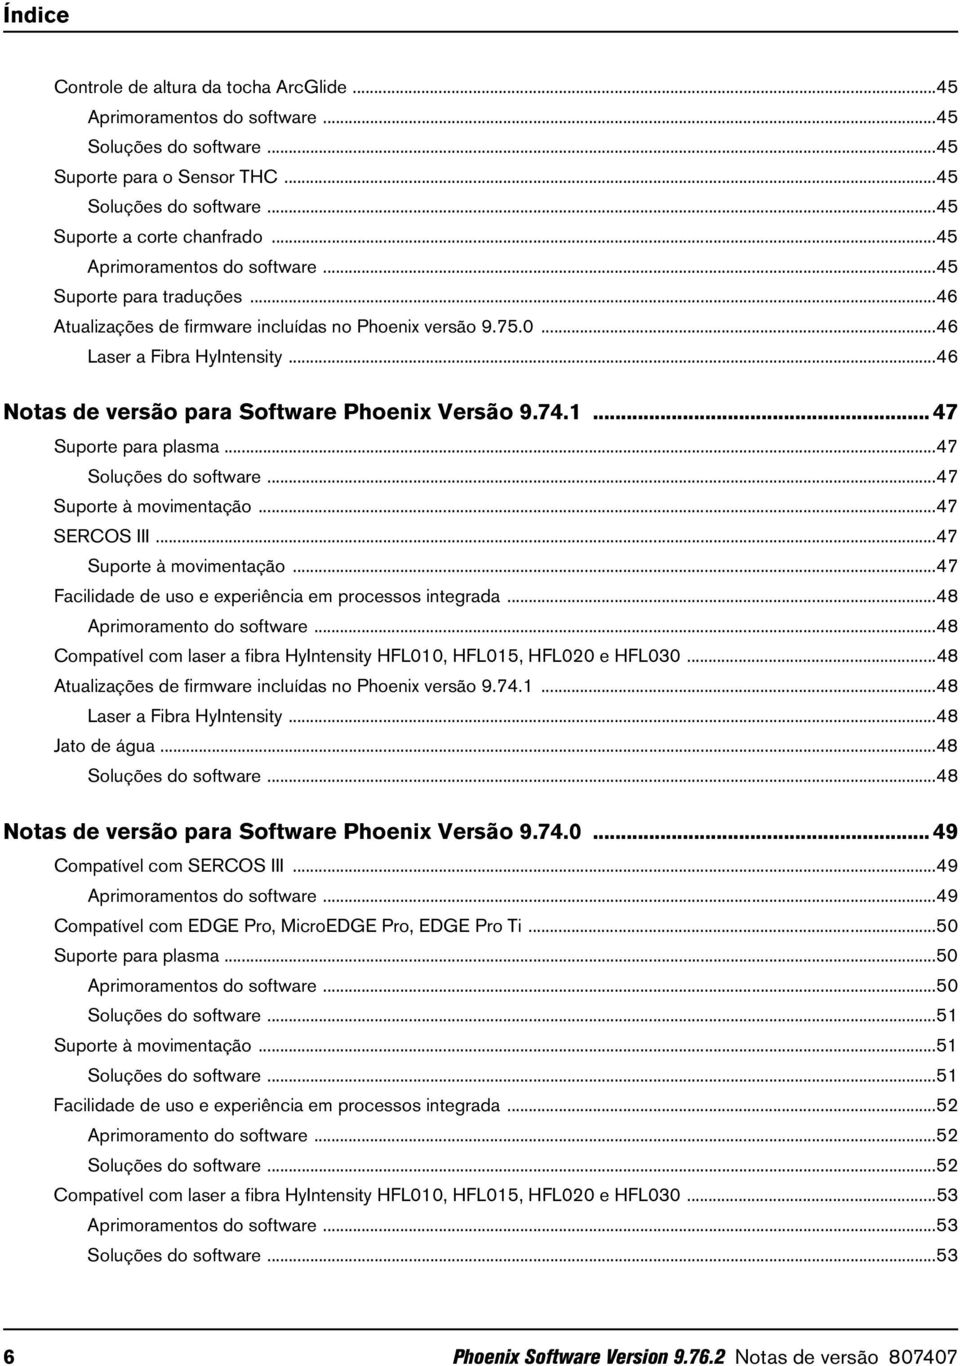 ..46 Notas de versão para Software Phoenix Versão 9.74.1... 47 Suporte para plasma...47 Soluções do software...47 Suporte à movimentação...47 SERCOS III...47 Suporte à movimentação...47 Facilidade de uso e experiência em processos integrada.